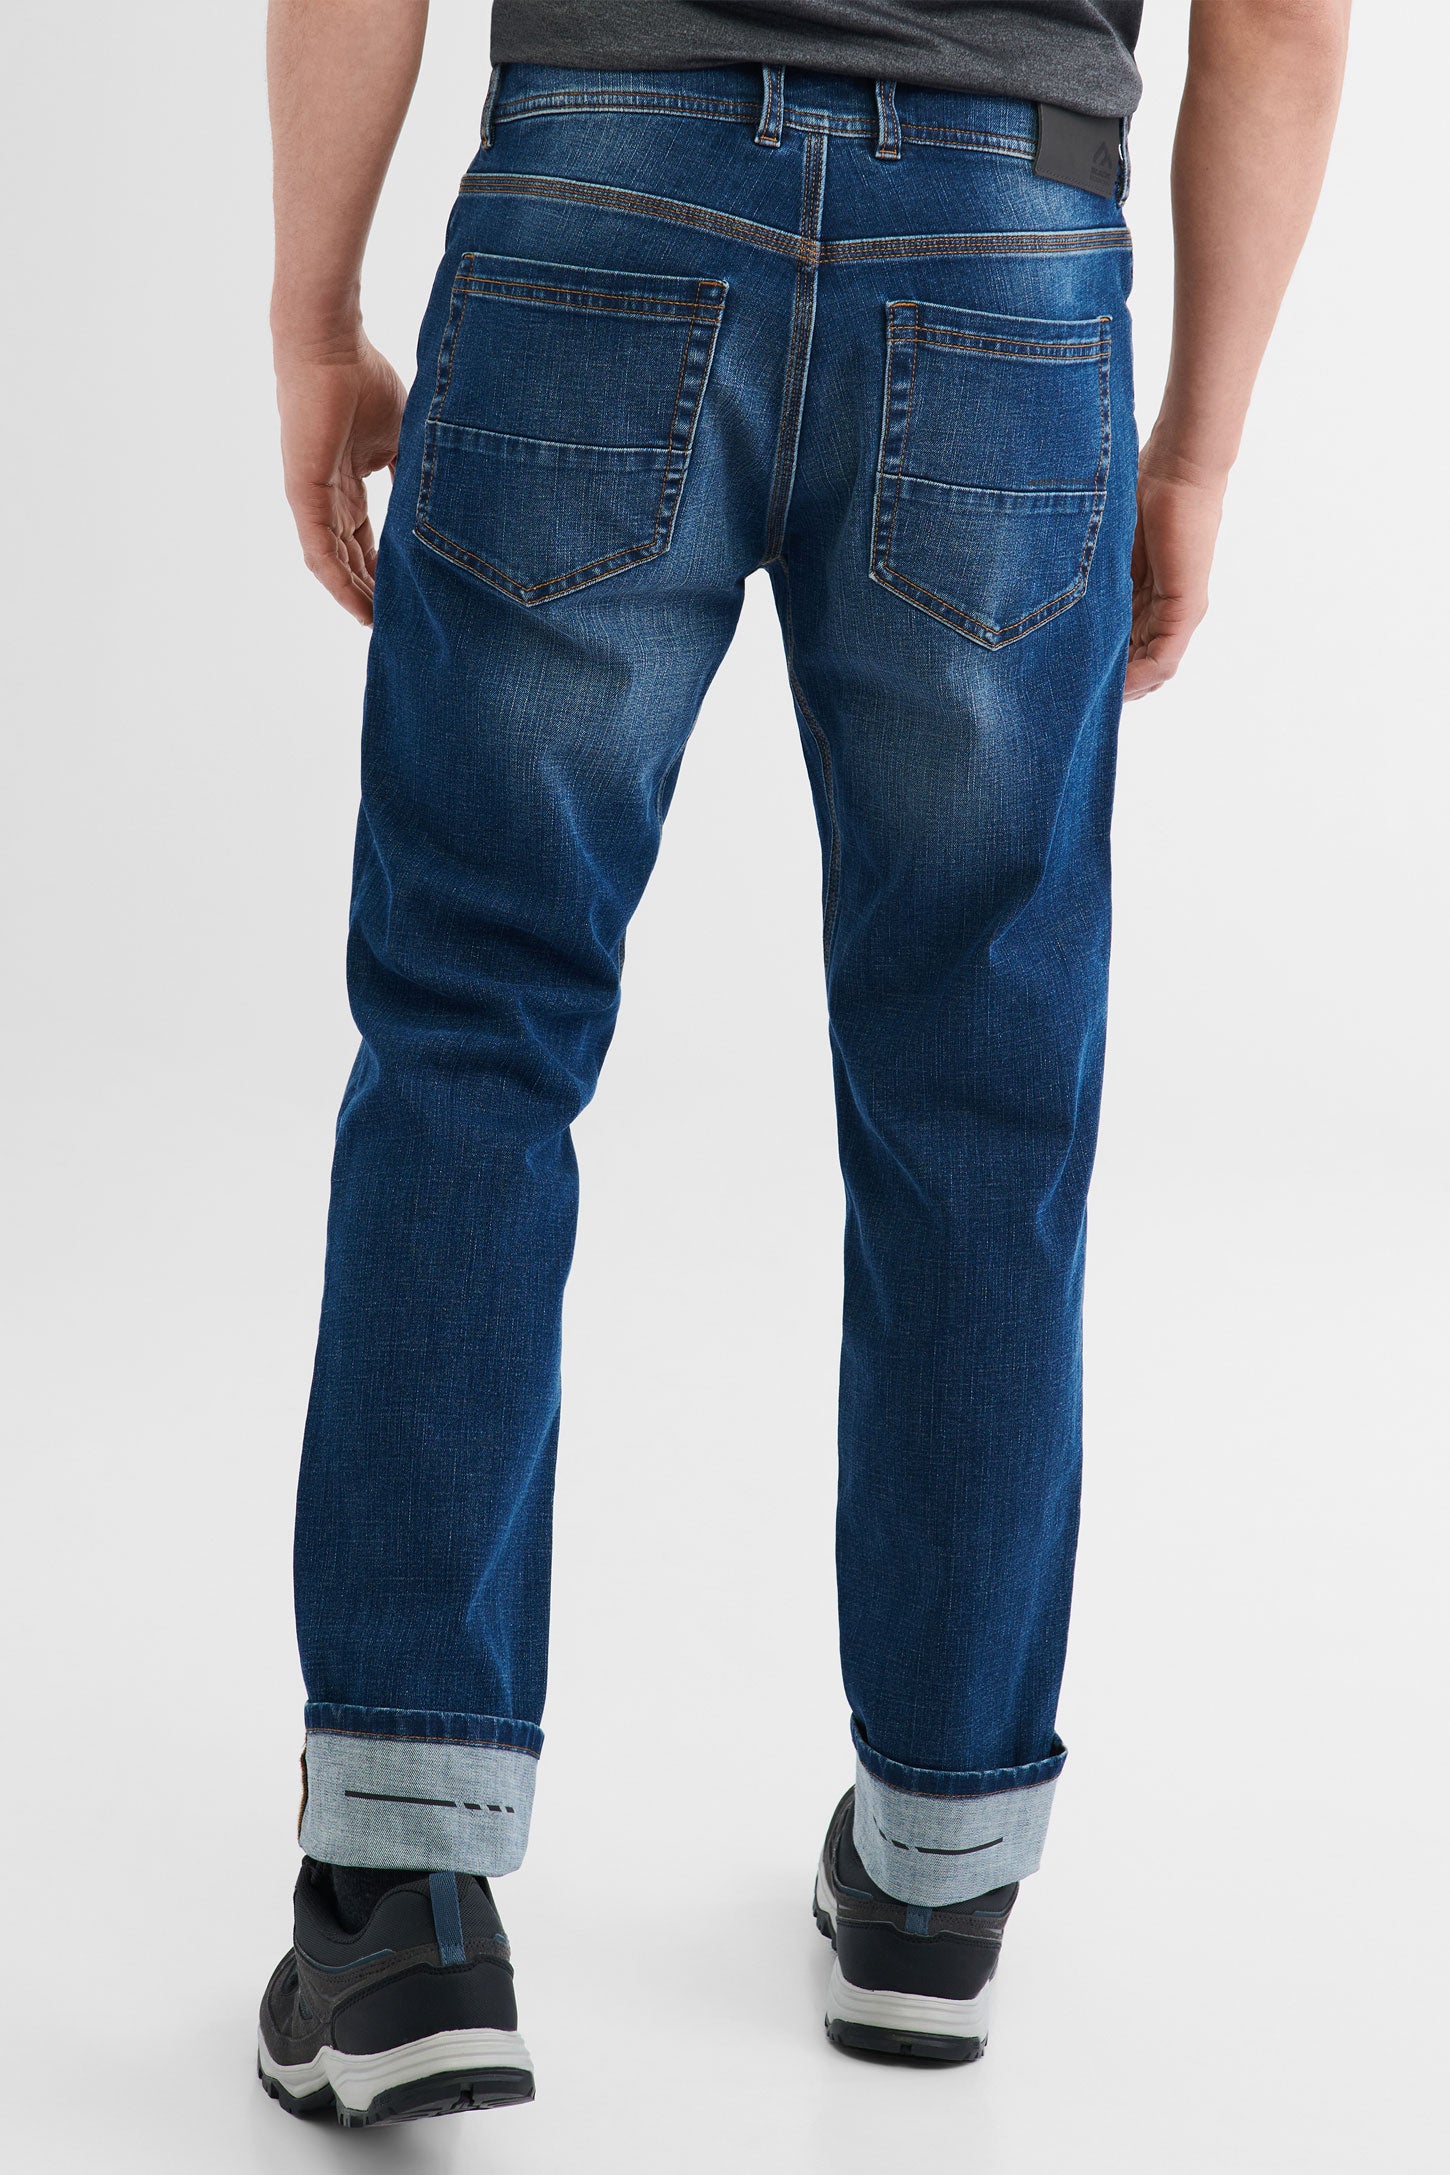 Jeans extensible 4 sens BM - Homme && DENIM